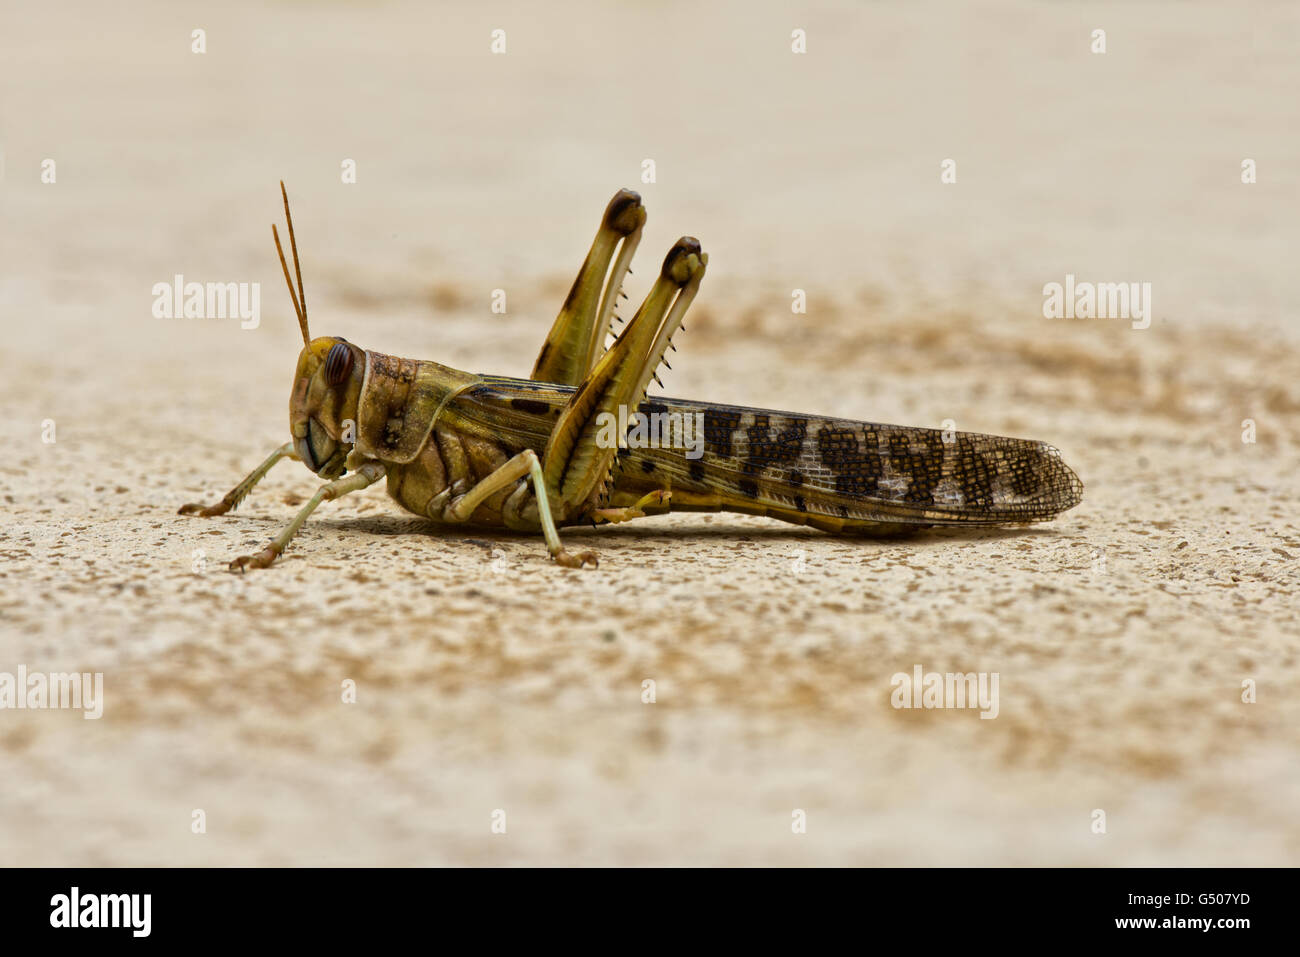 Imagen de un adulto, la langosta del desierto (Schistocerca gregaria. Foto de stock